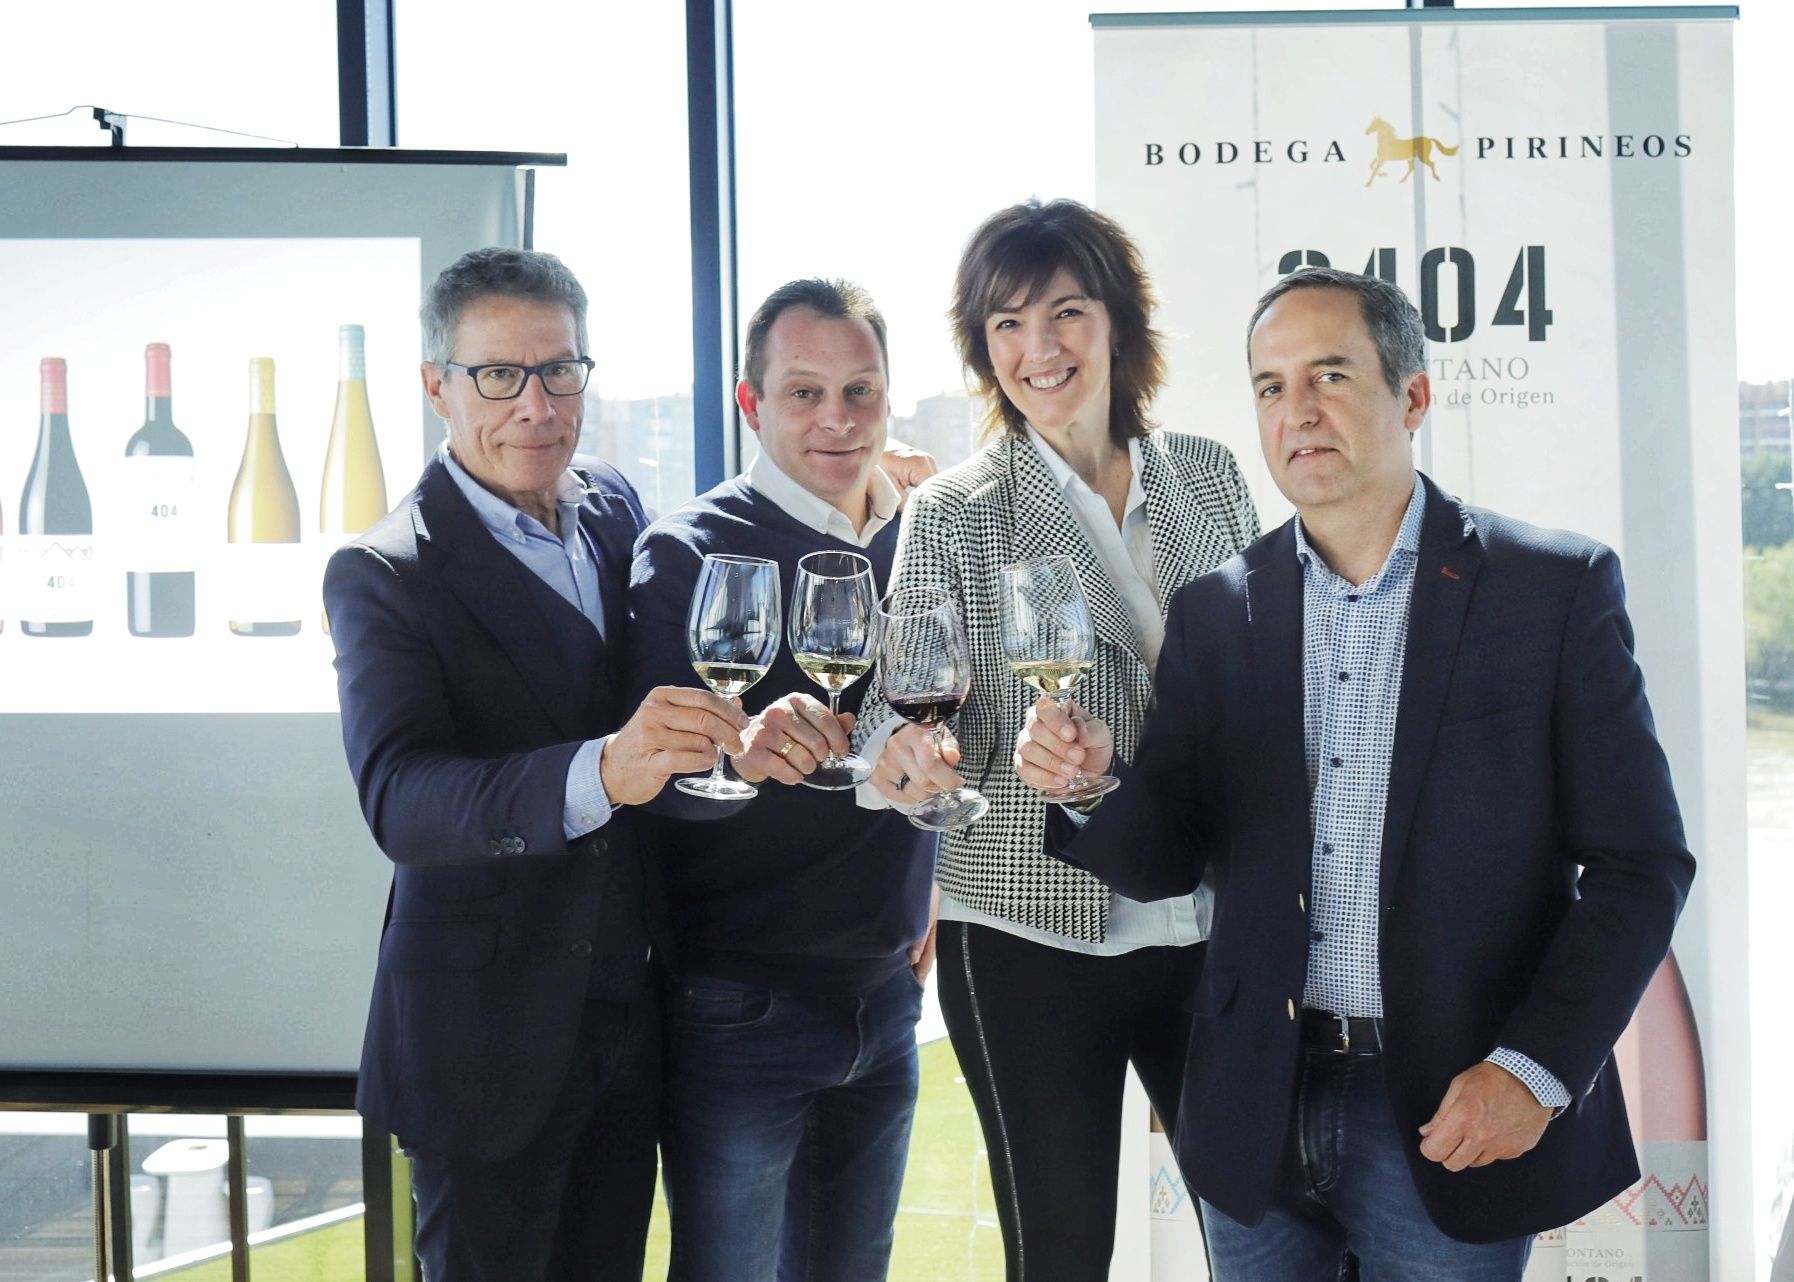 Bodega Pirineos presenta la nueva colección 3404 y dos monovarietales, de gewürztraminer y chardonnay, con una imagen renovada